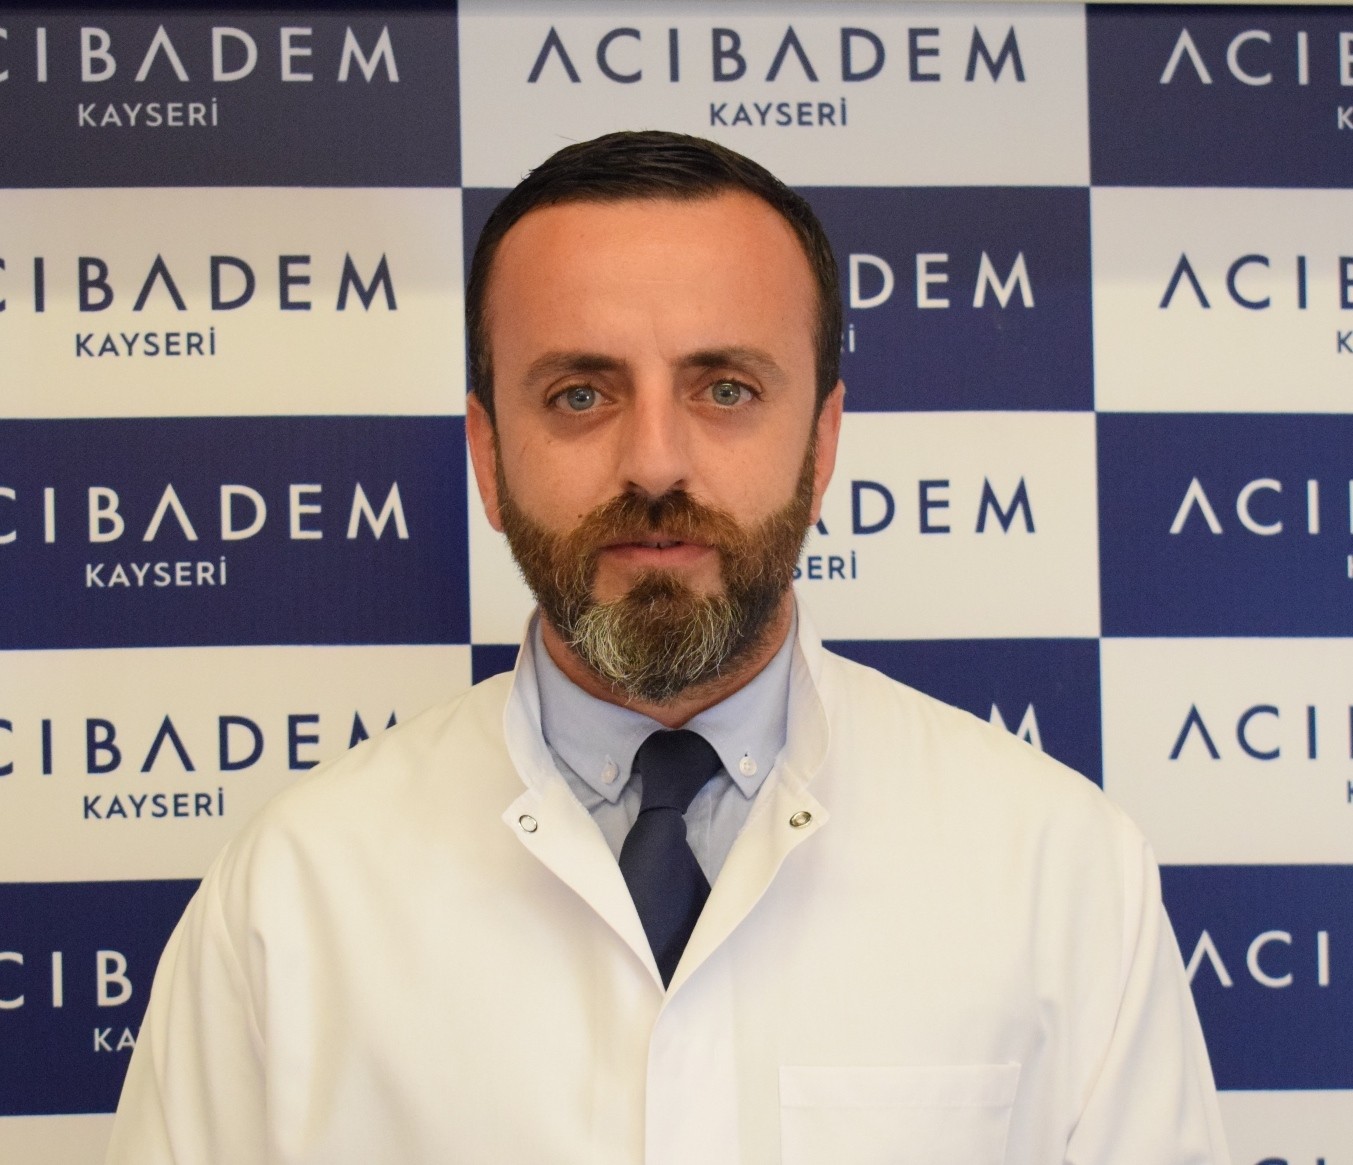 Estetik, Plastik ve Rekonstrüktif Cerrahi Uzmanı Dr. Yalçın Yontar Acıbadem Kayseri Hastanesi’nde göreve başladı